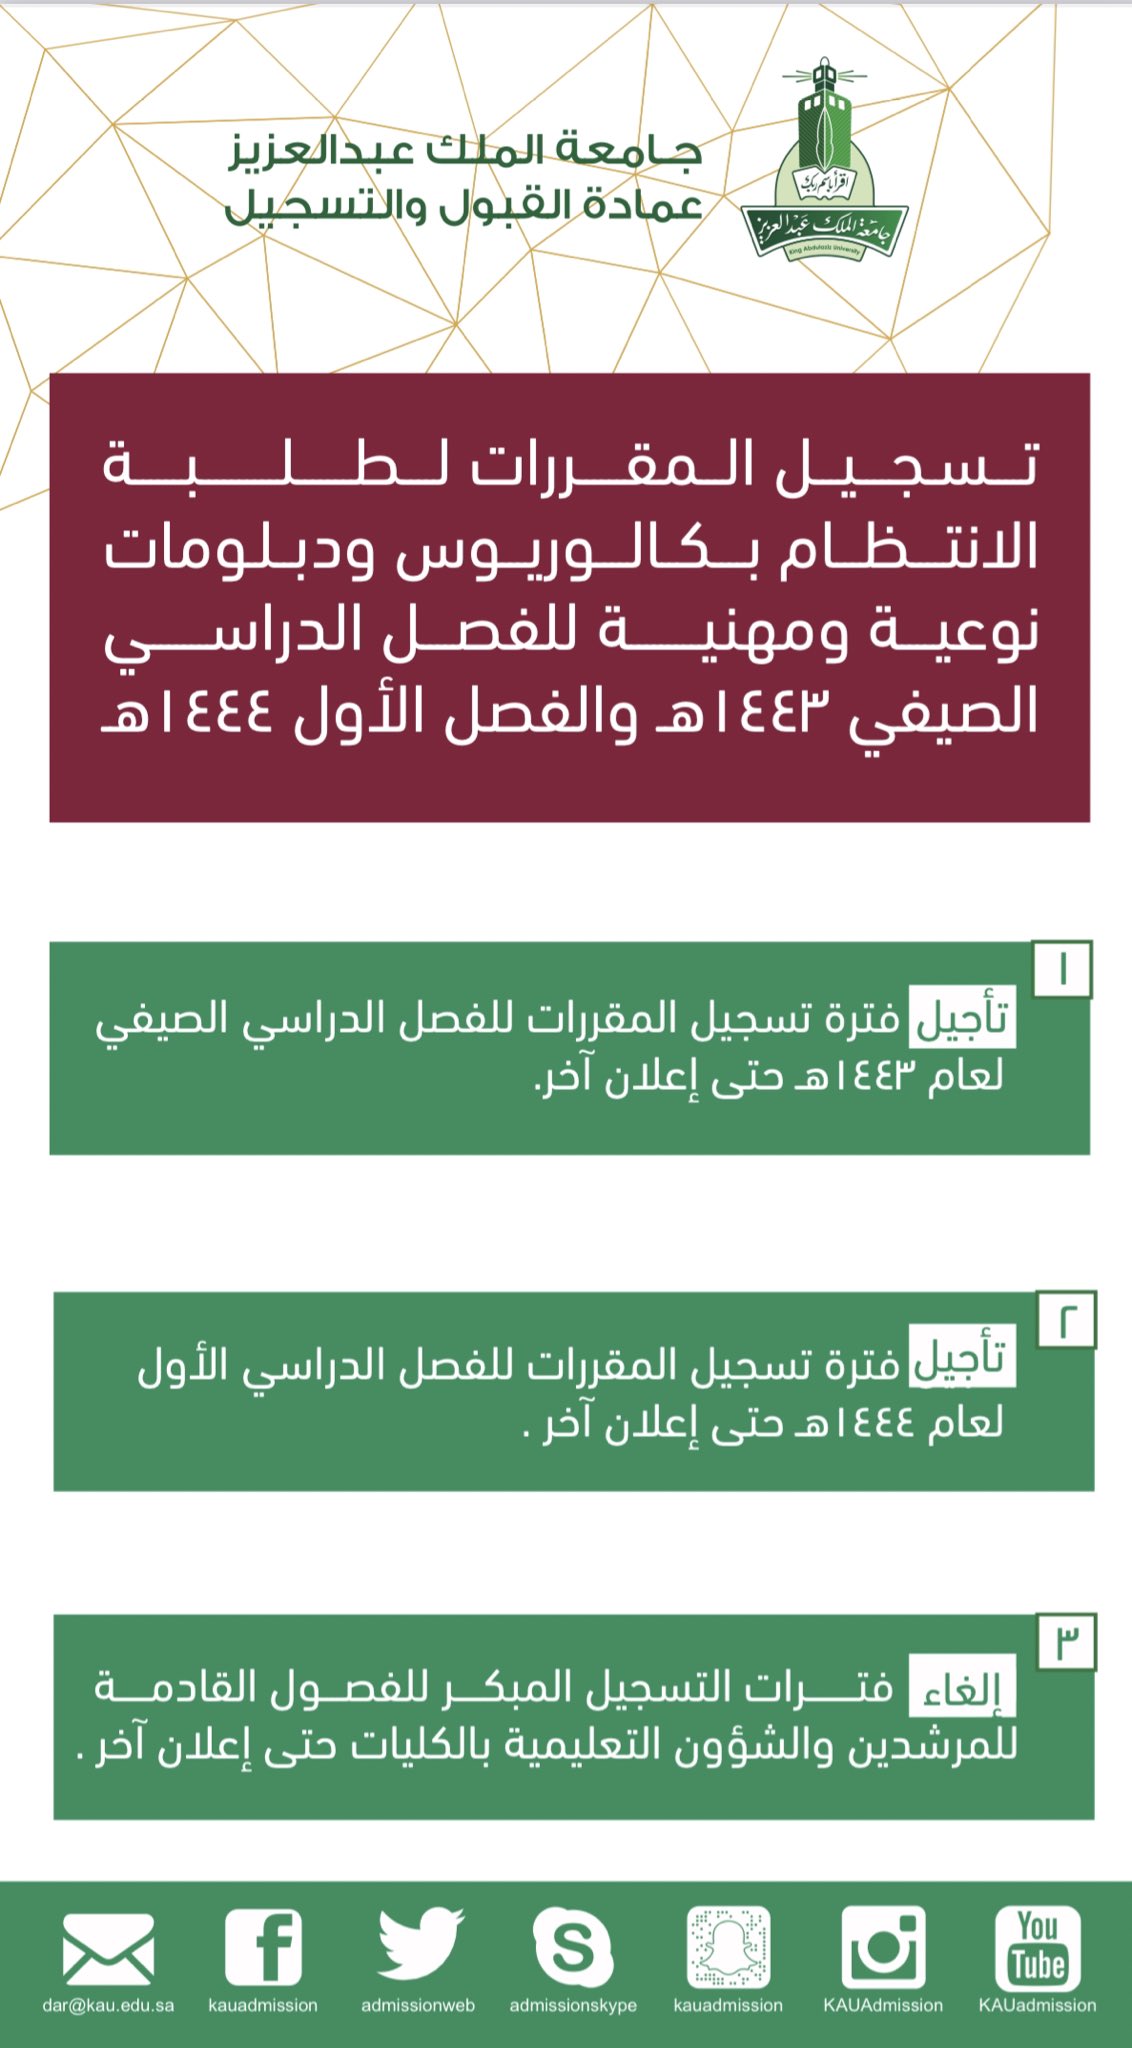 جامعة عمادة الملك عبدالعزيز القبول والتسجيل جامعة الملك